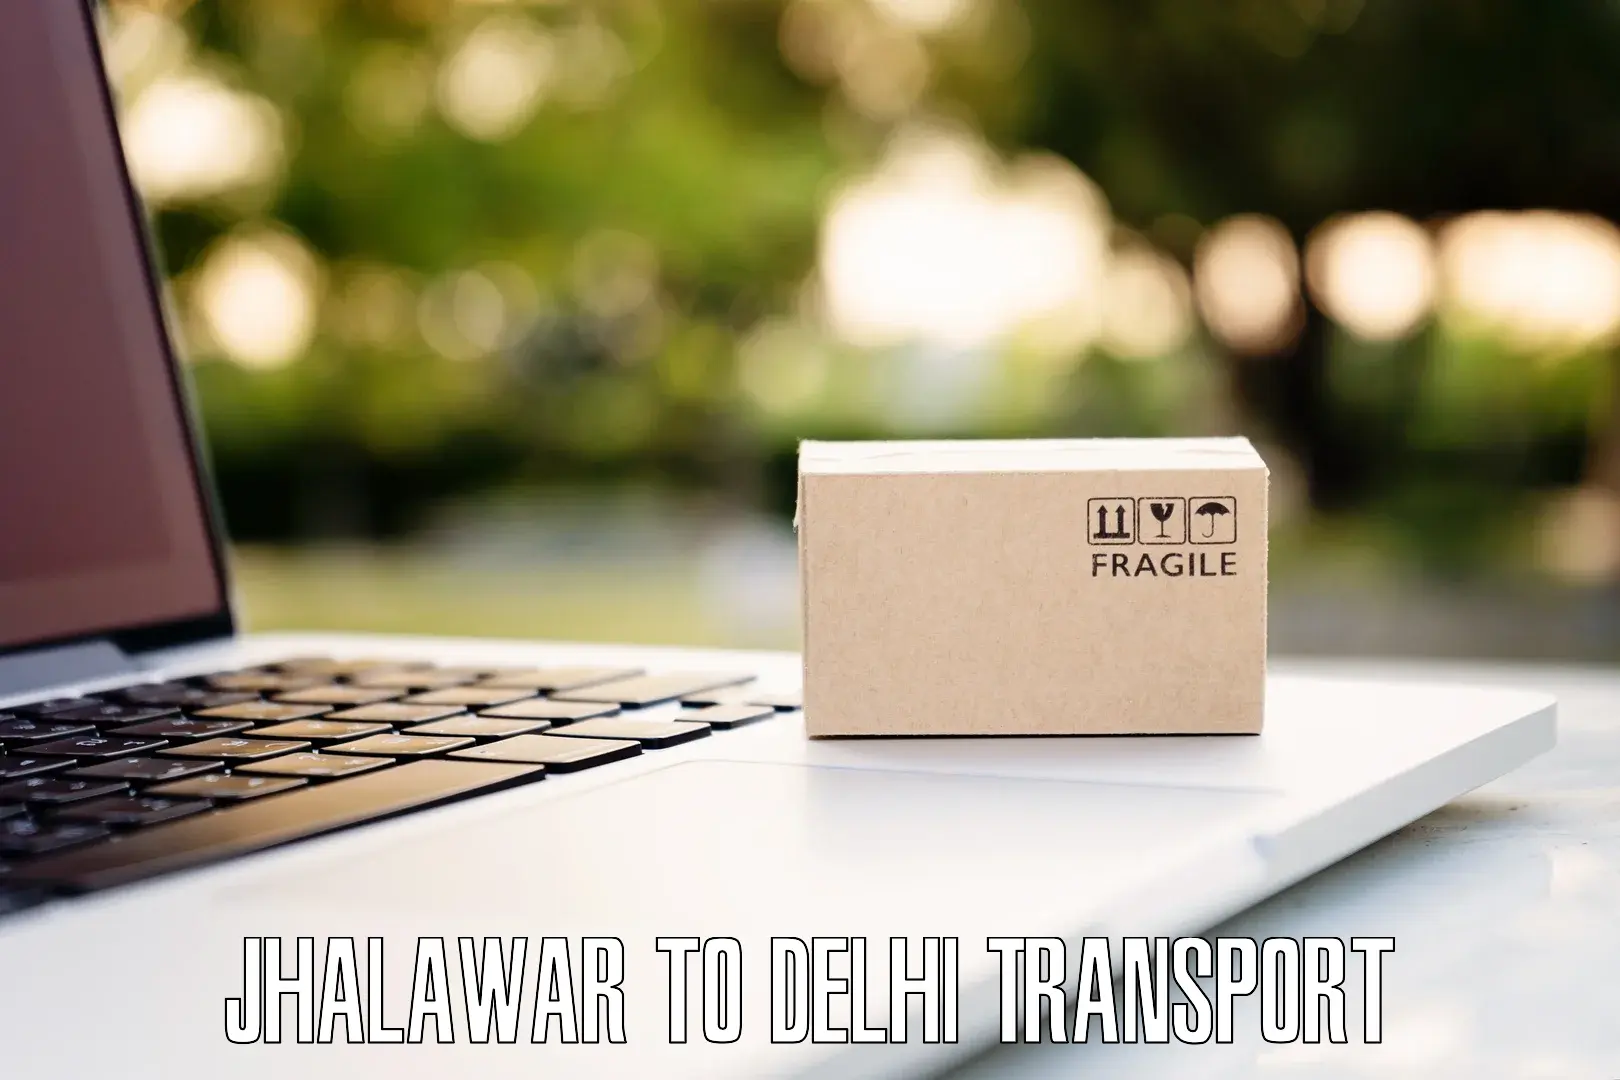 Daily transport service Jhalawar to Jamia Millia Islamia New Delhi